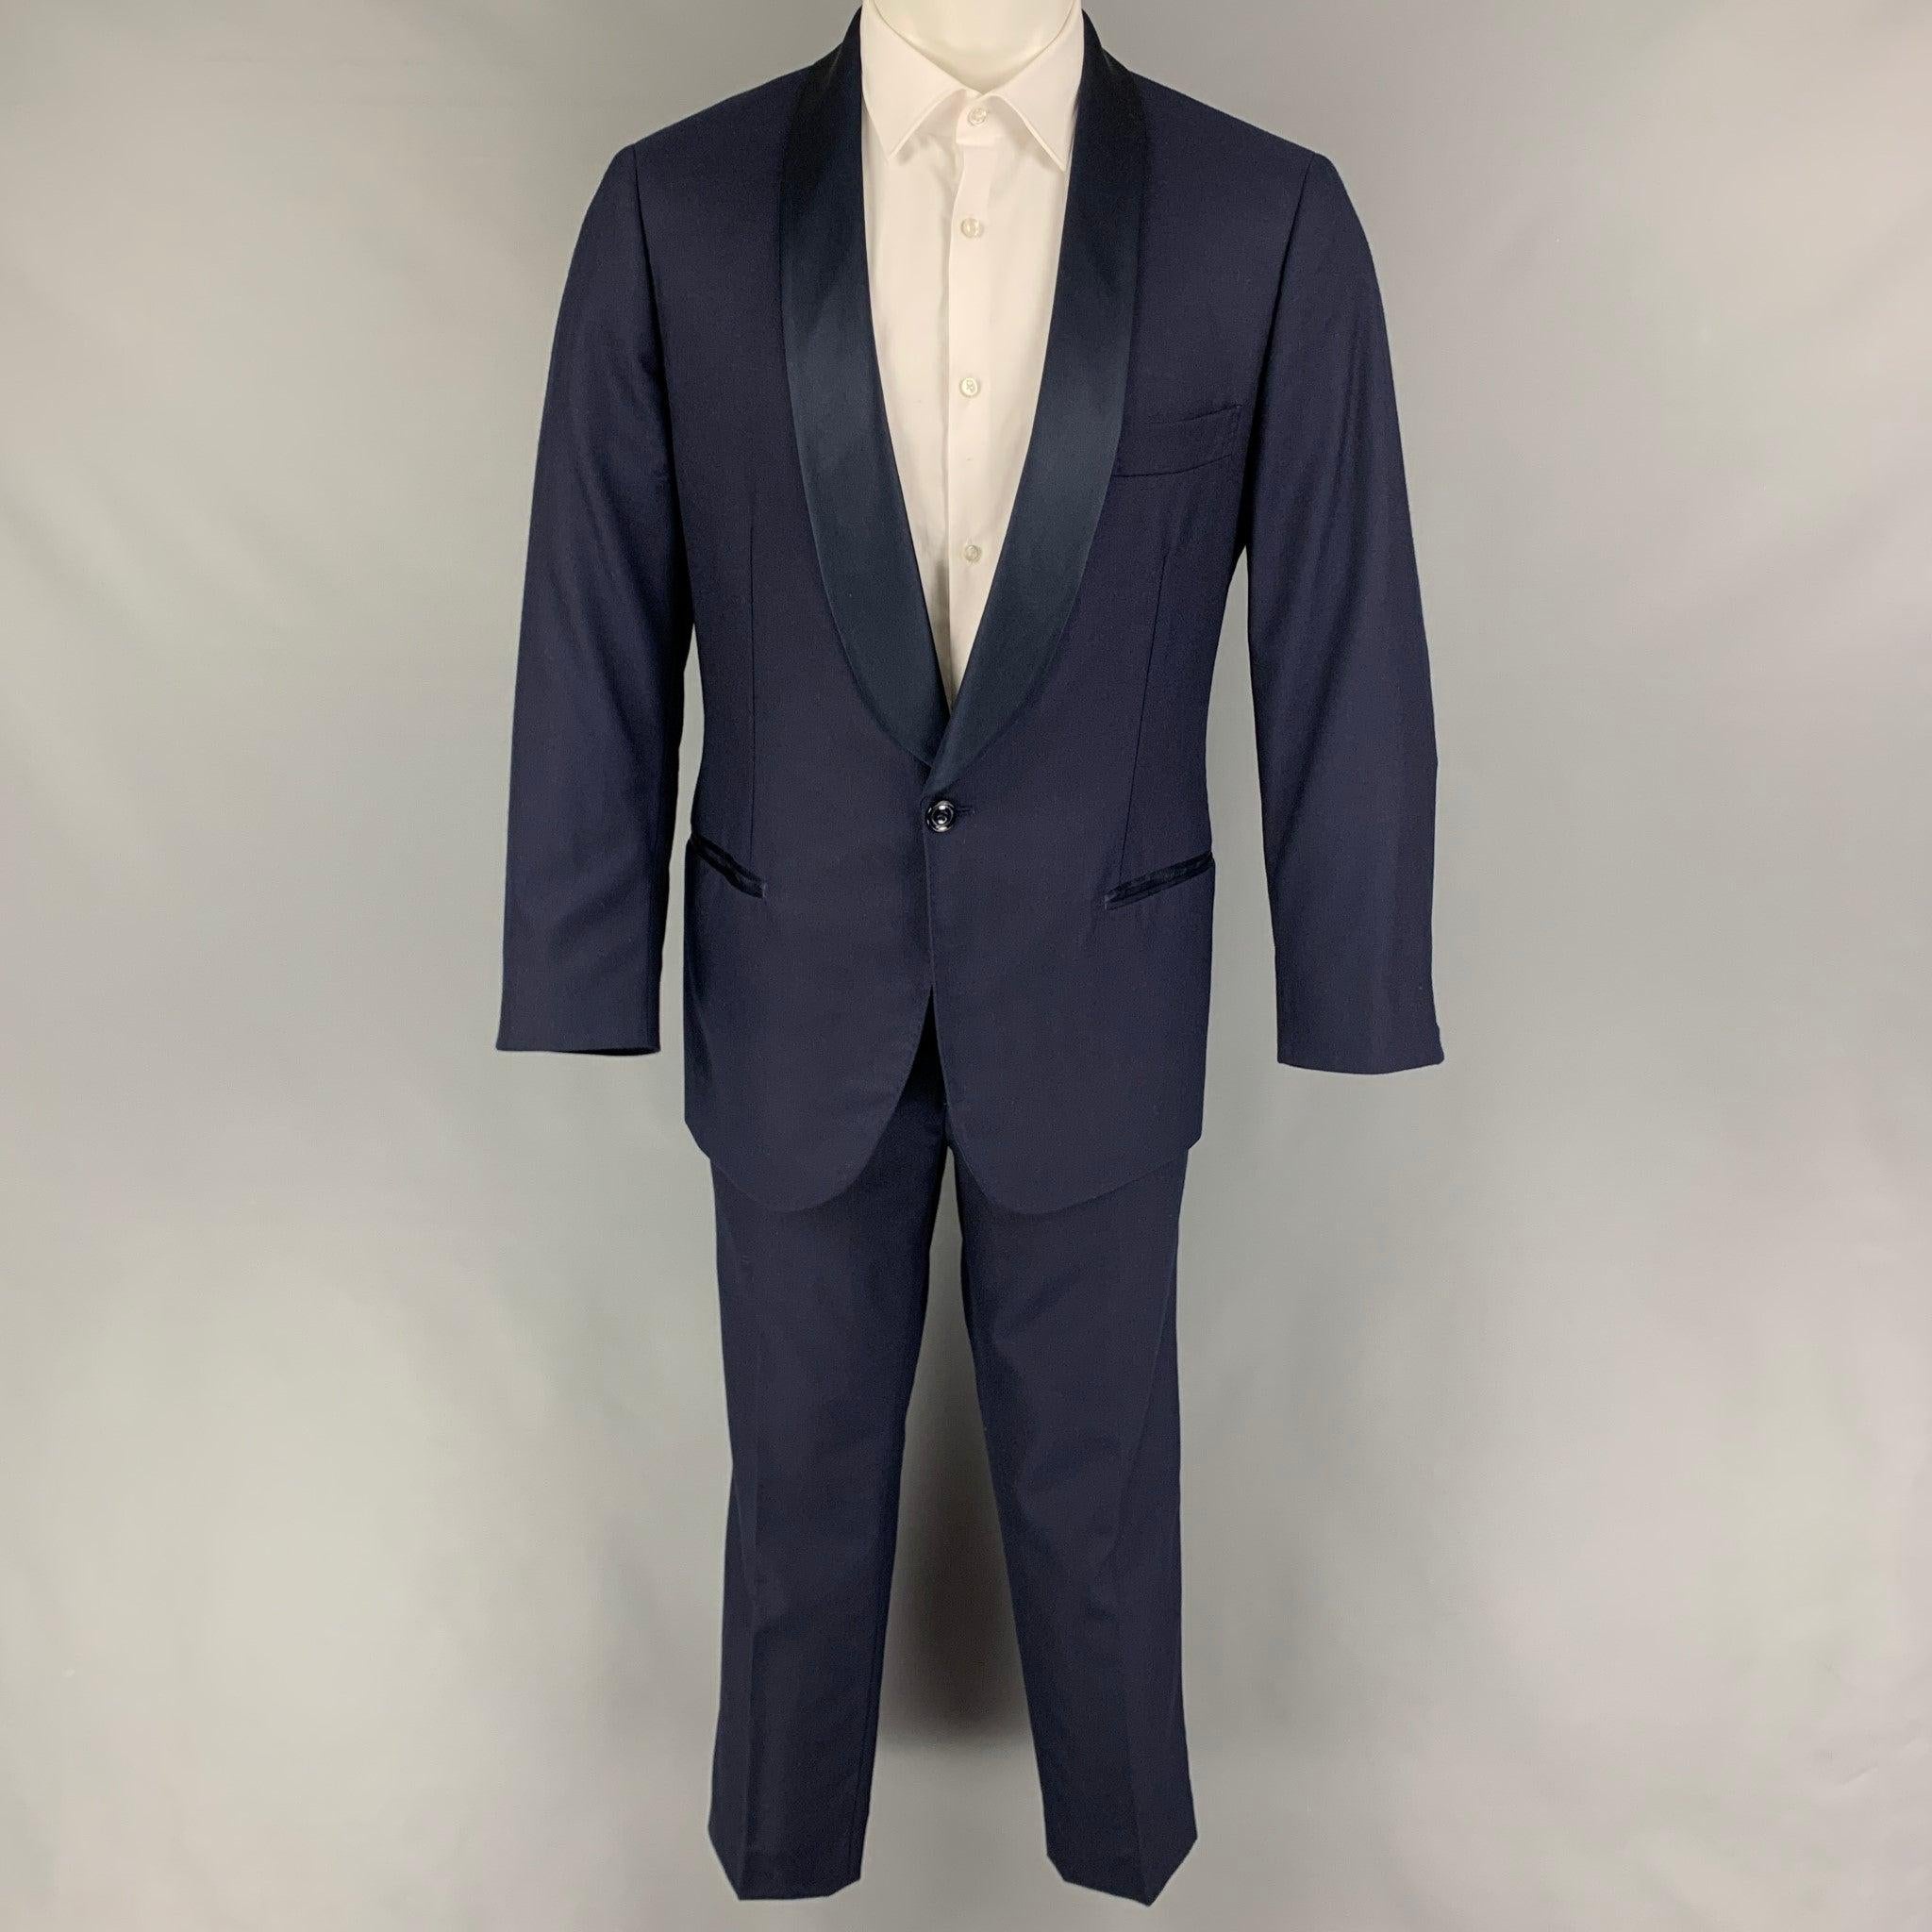 BRUNELLO CUCINELLI
Der Anzug ist aus marineblauer Baumwolle/Seide mit Vollfutter und besteht aus einem einreihigen Sportmantel mit Schalkragen und einer passenden, flachen Hose. Made in Italy. sehr guter gebrauchter Zustand. Leichte Flecken an der